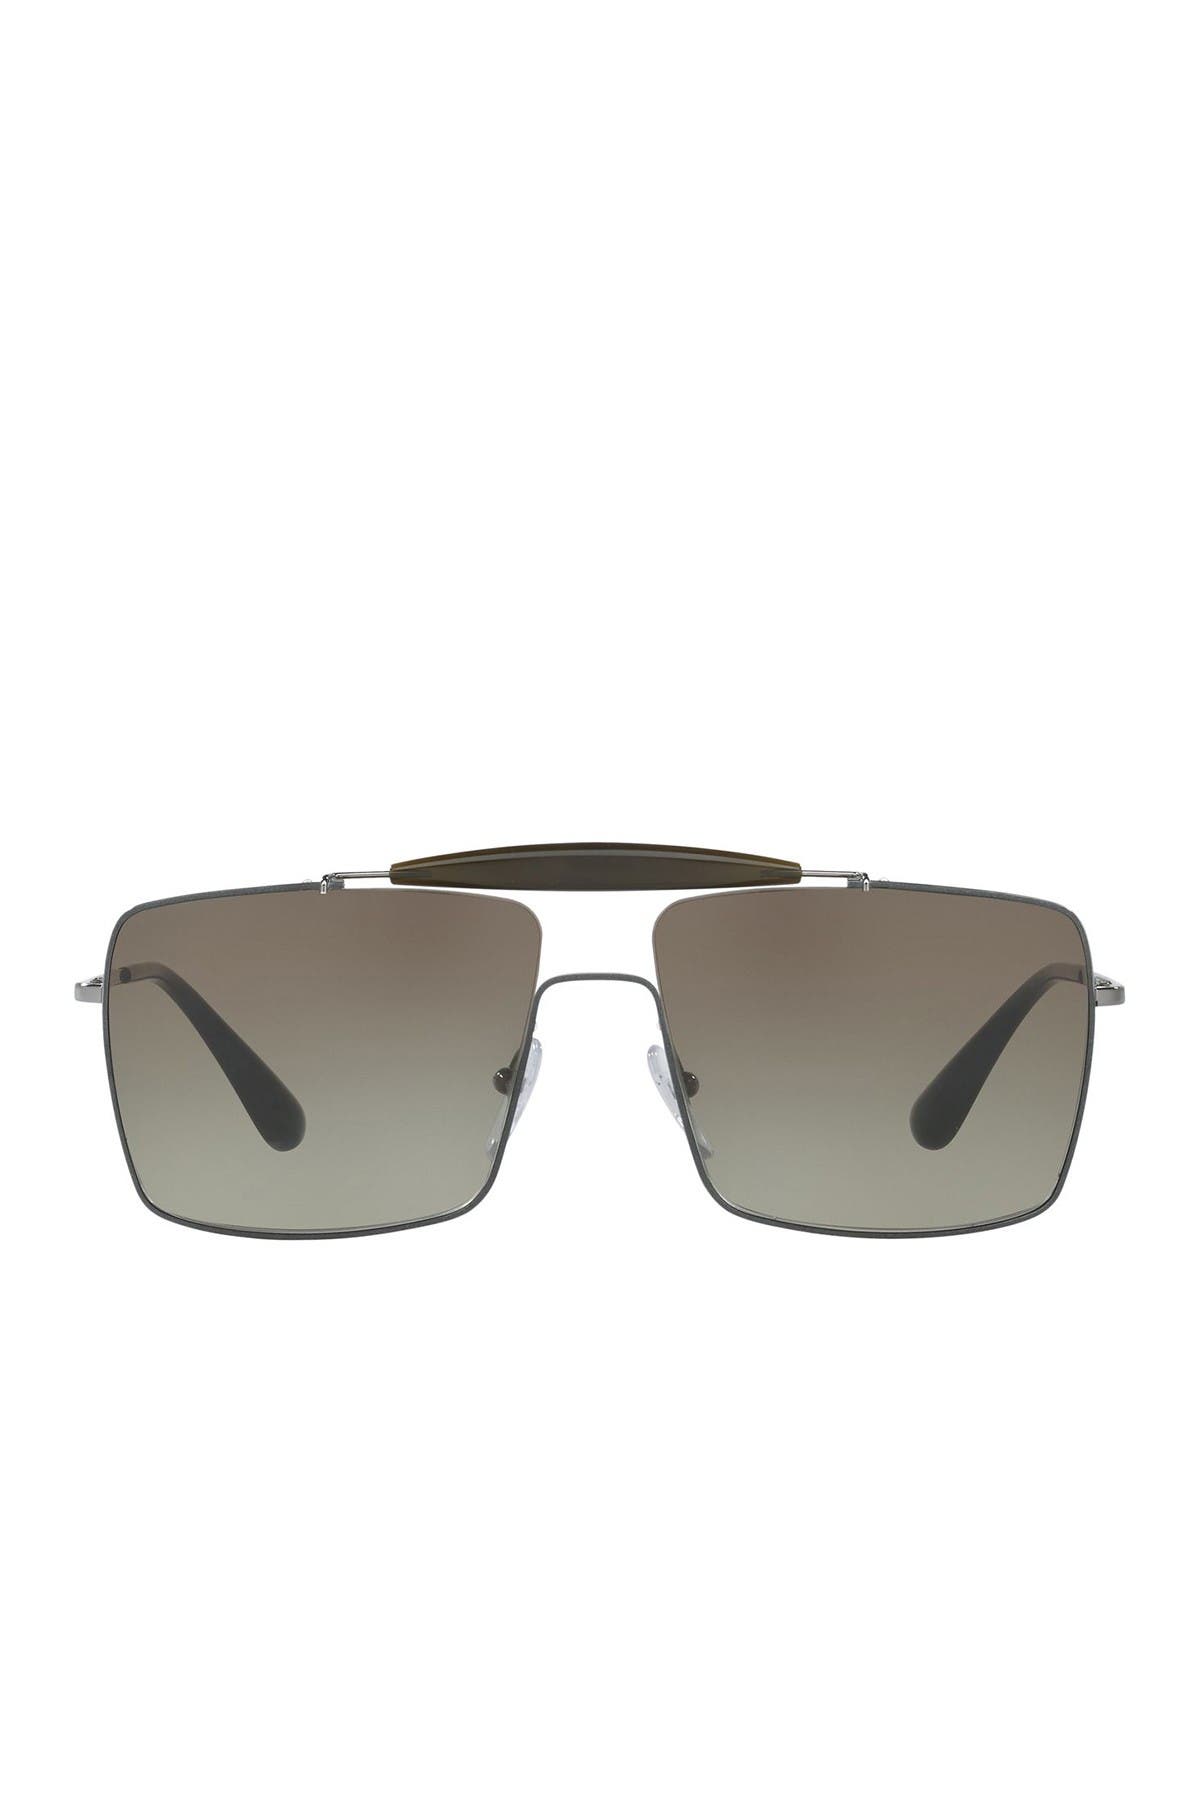 Prada | 58mm Square Sunglasses 